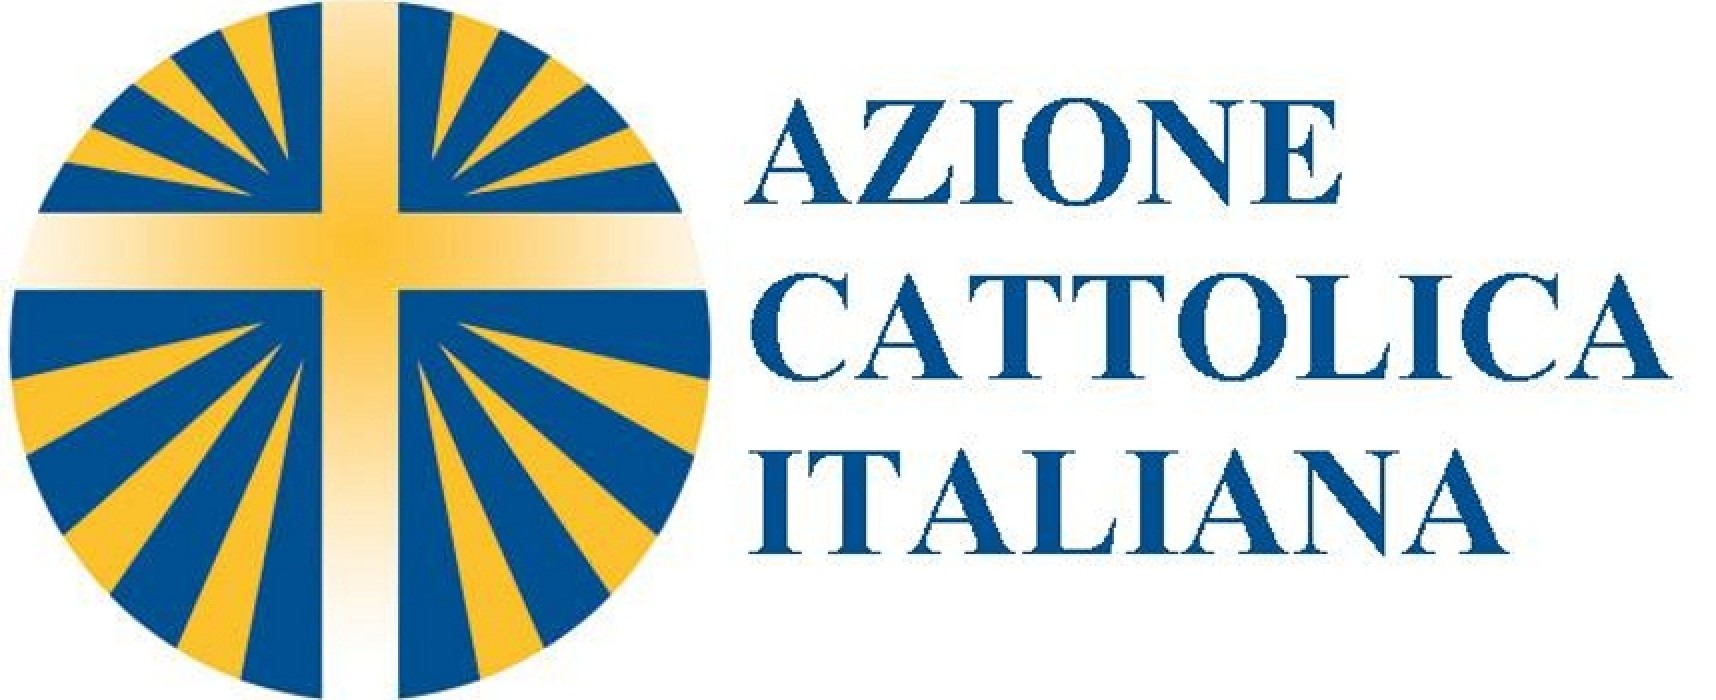 “fierA di esserCI”, anche Bisceglie parteciperà alla festa dell’Azione Cattolica diocesana